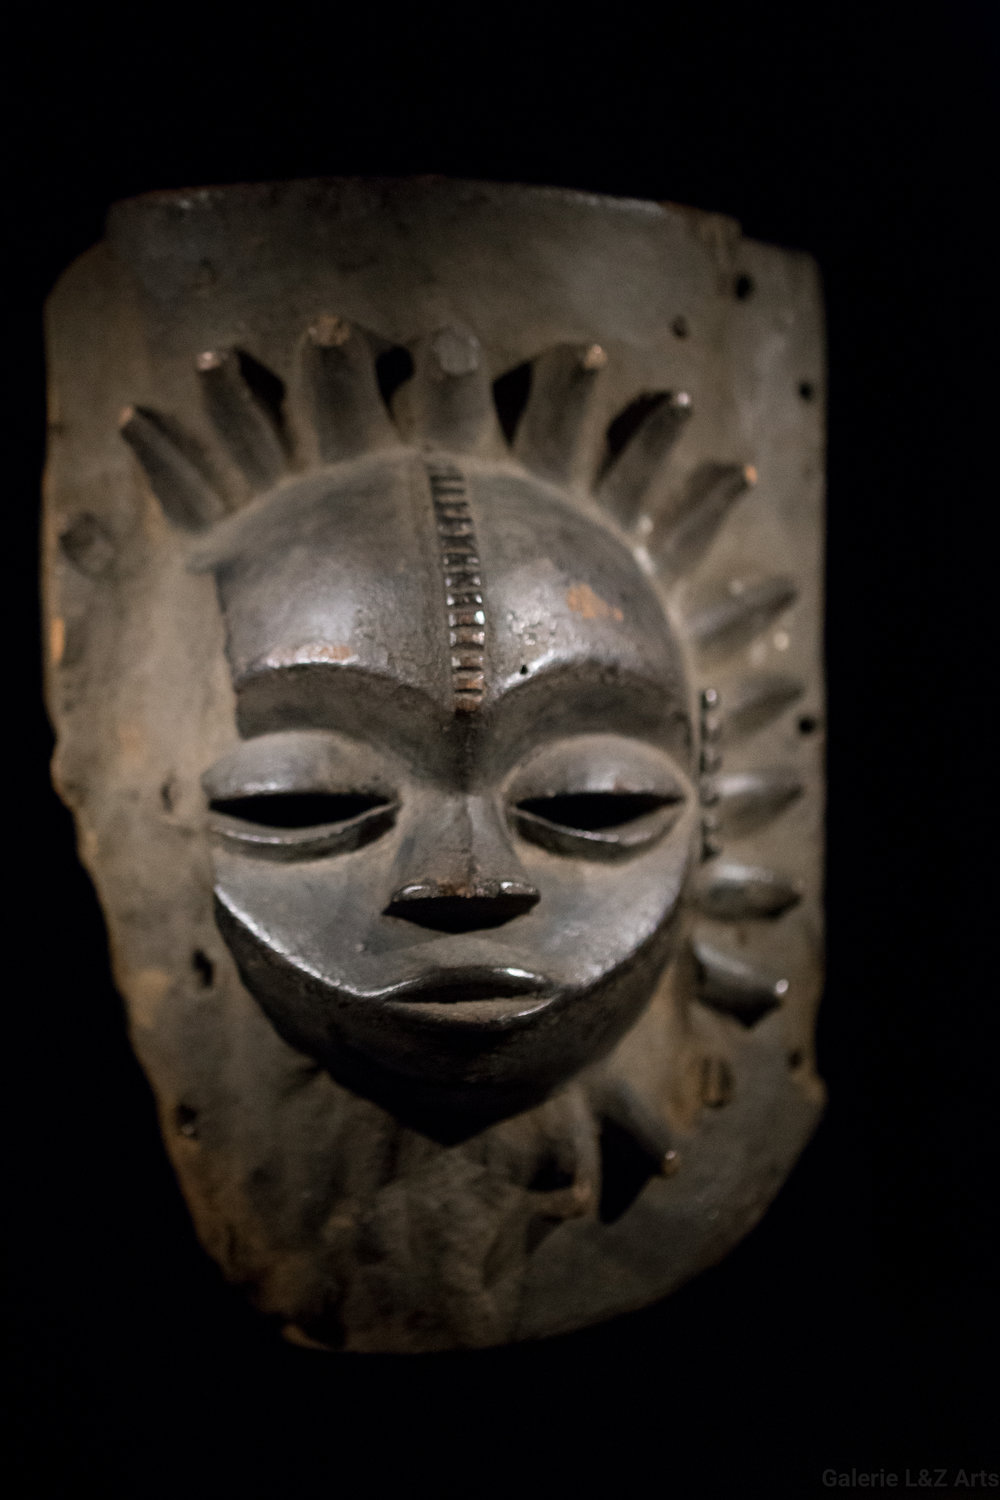 exposition-masque-art-tribal-africain-musee-quai-branly-belgique-galerie-lz-arts-liege-cite-miroir-oceanie-asie-japon-amerique-art-premier-nepal-9.jpg